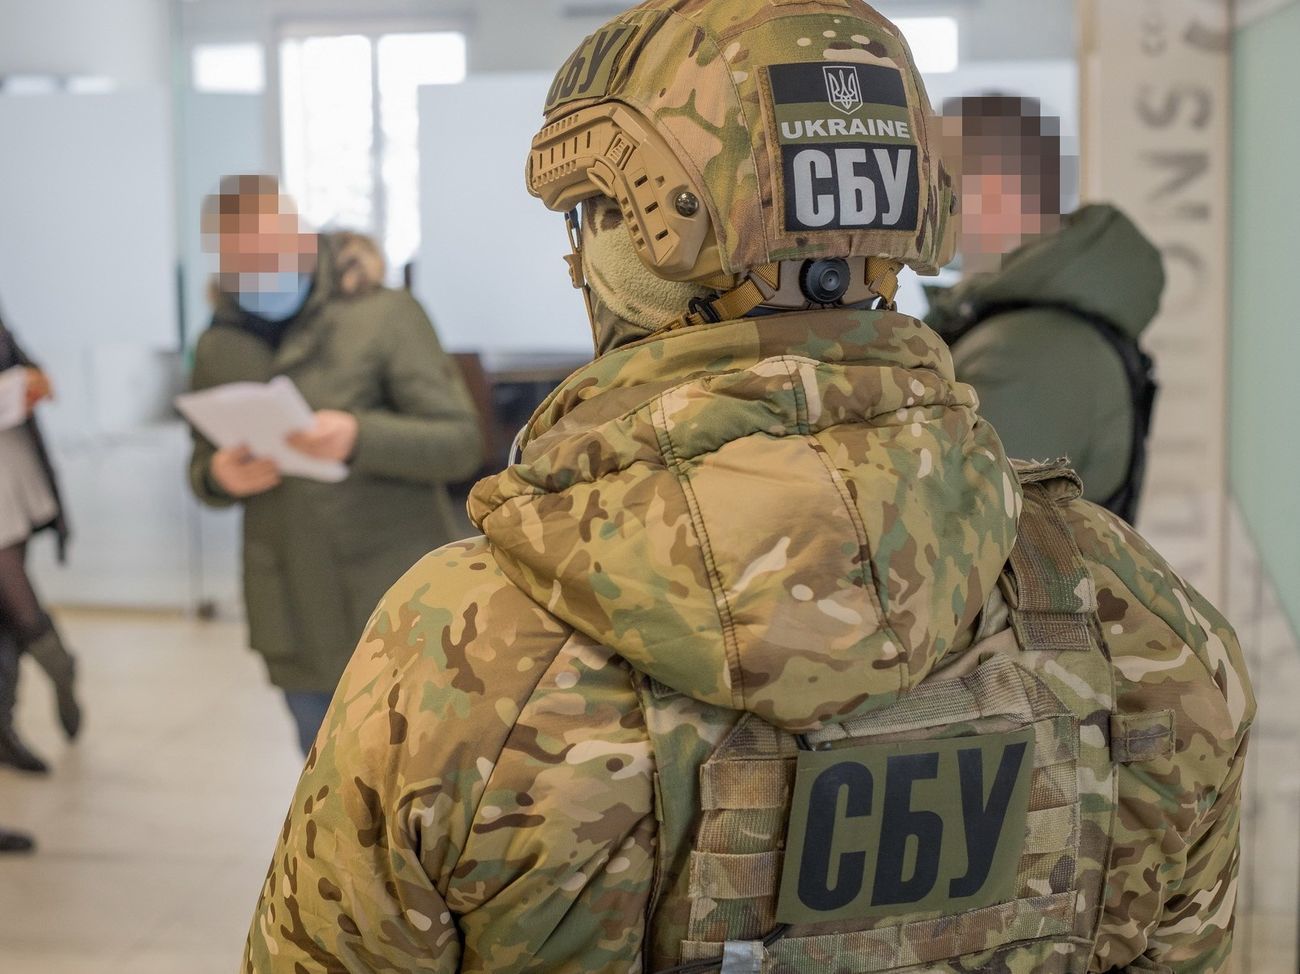 СБУ задержала топ-чиновника, стоявшего "у руля" в период аннексии Крыма